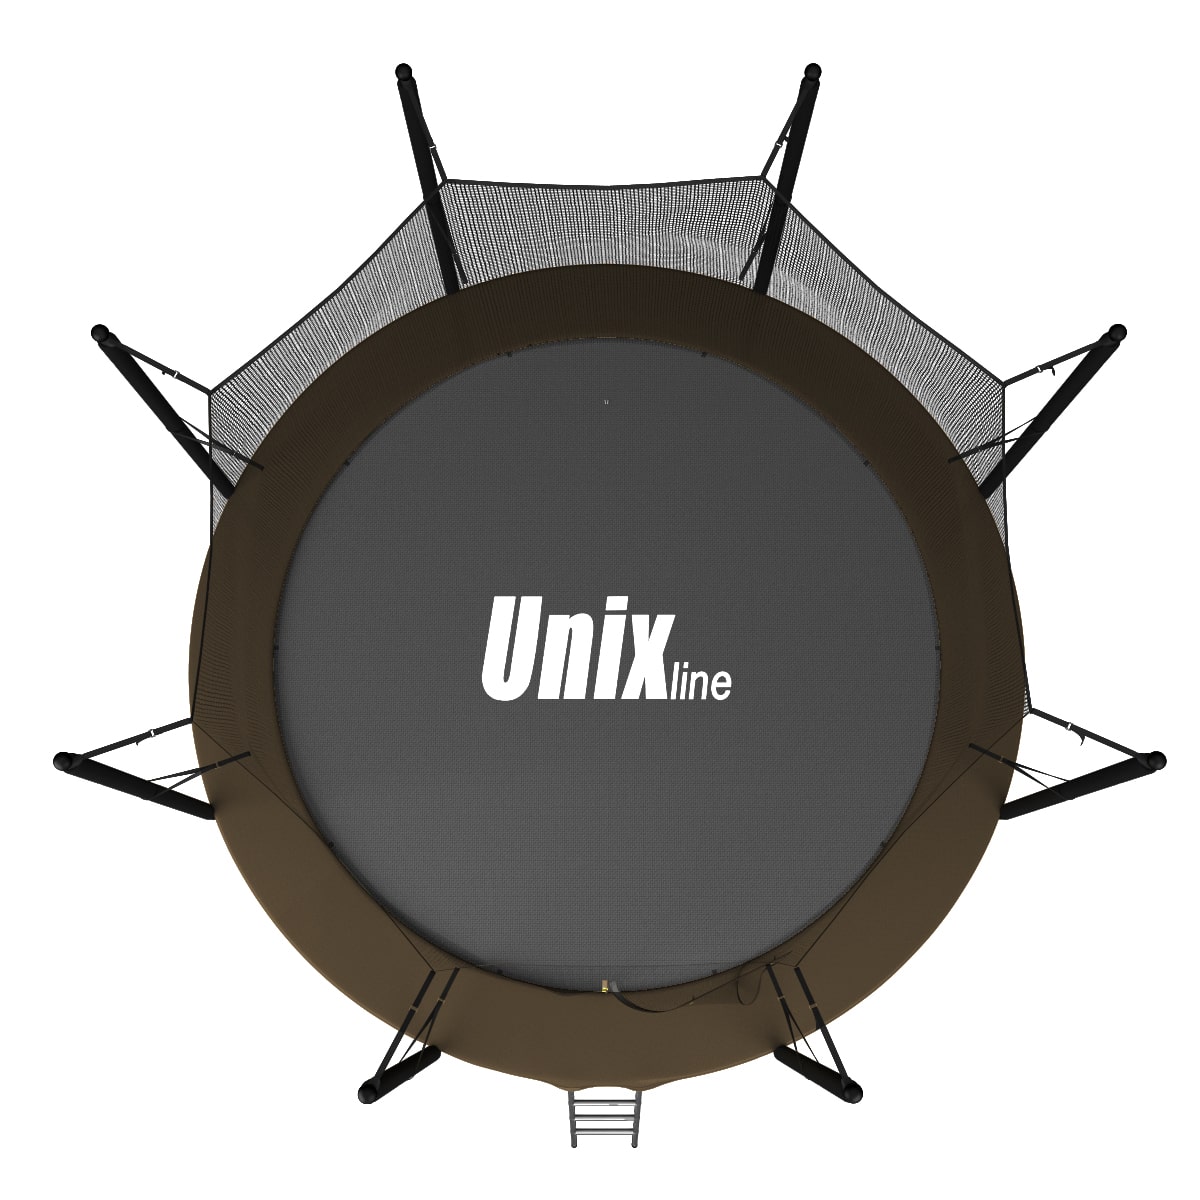 Батут UNIX line Black&Brown 12 ft, внутренняя сетка